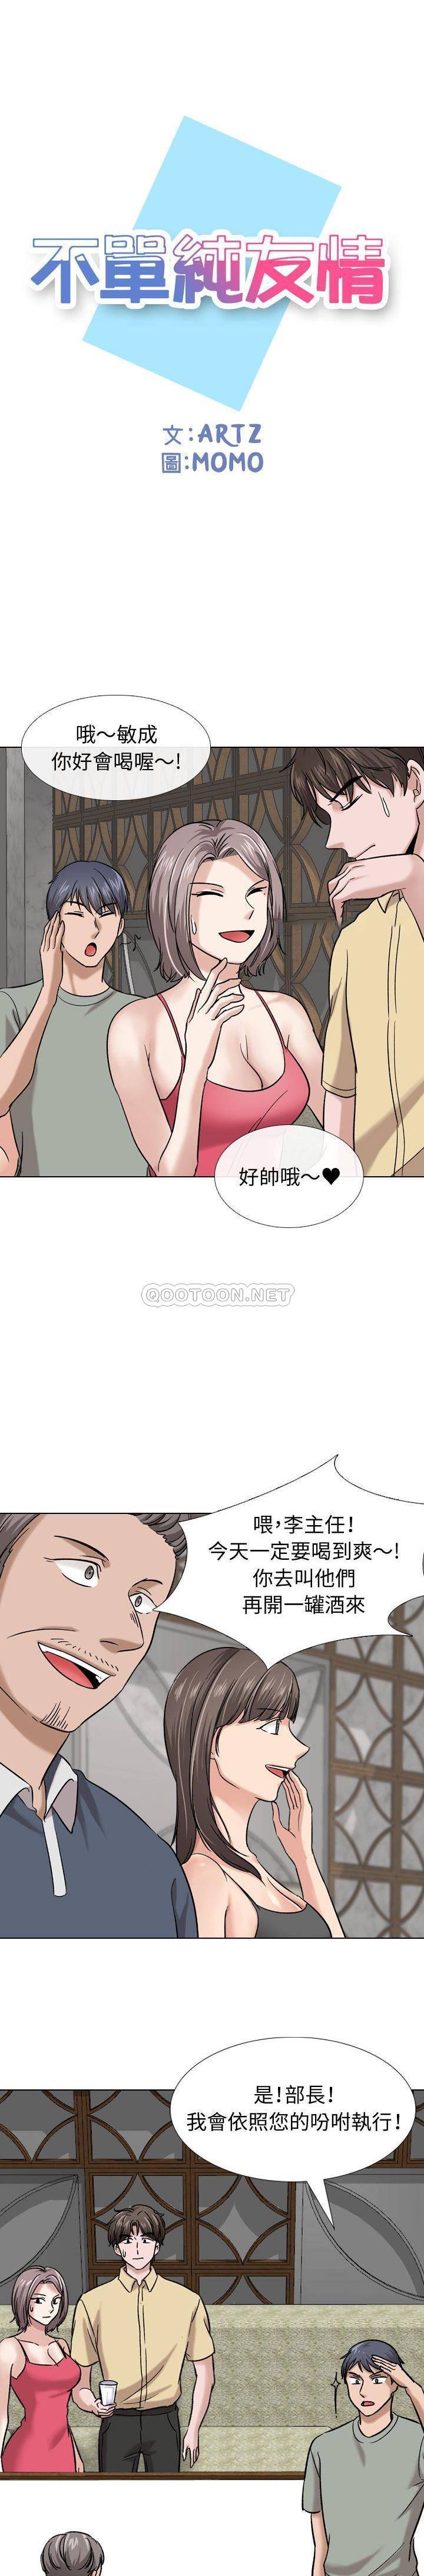 韩国污漫画 不單純友情 第10话 1